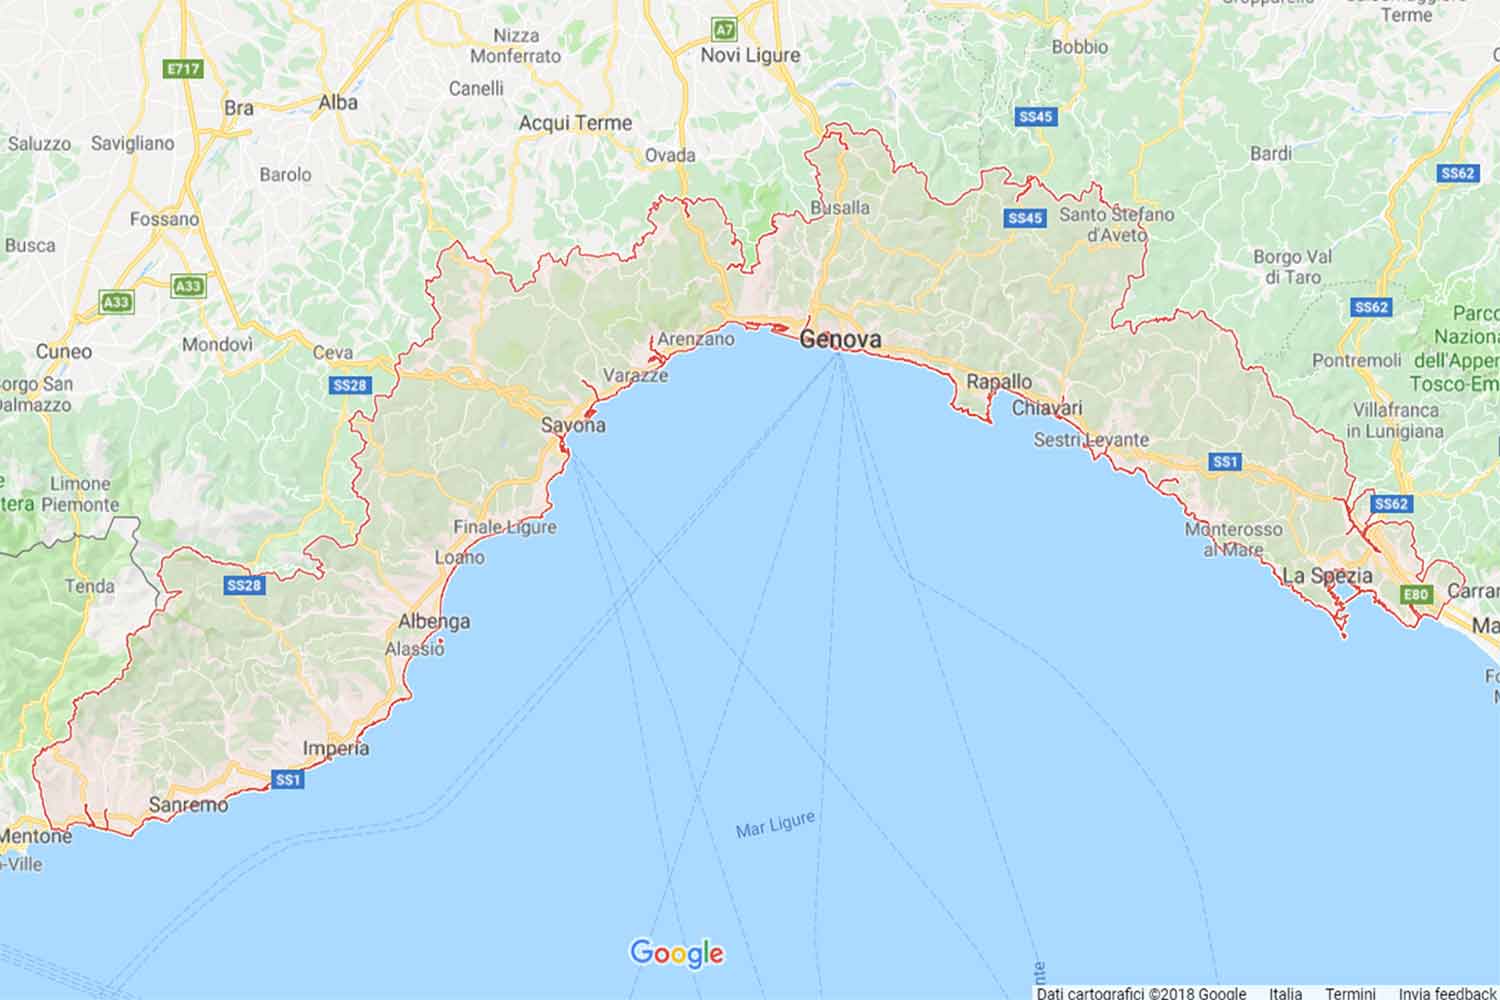 Liguria - La Spezia - Ameglia Preventivi Veloci google maps